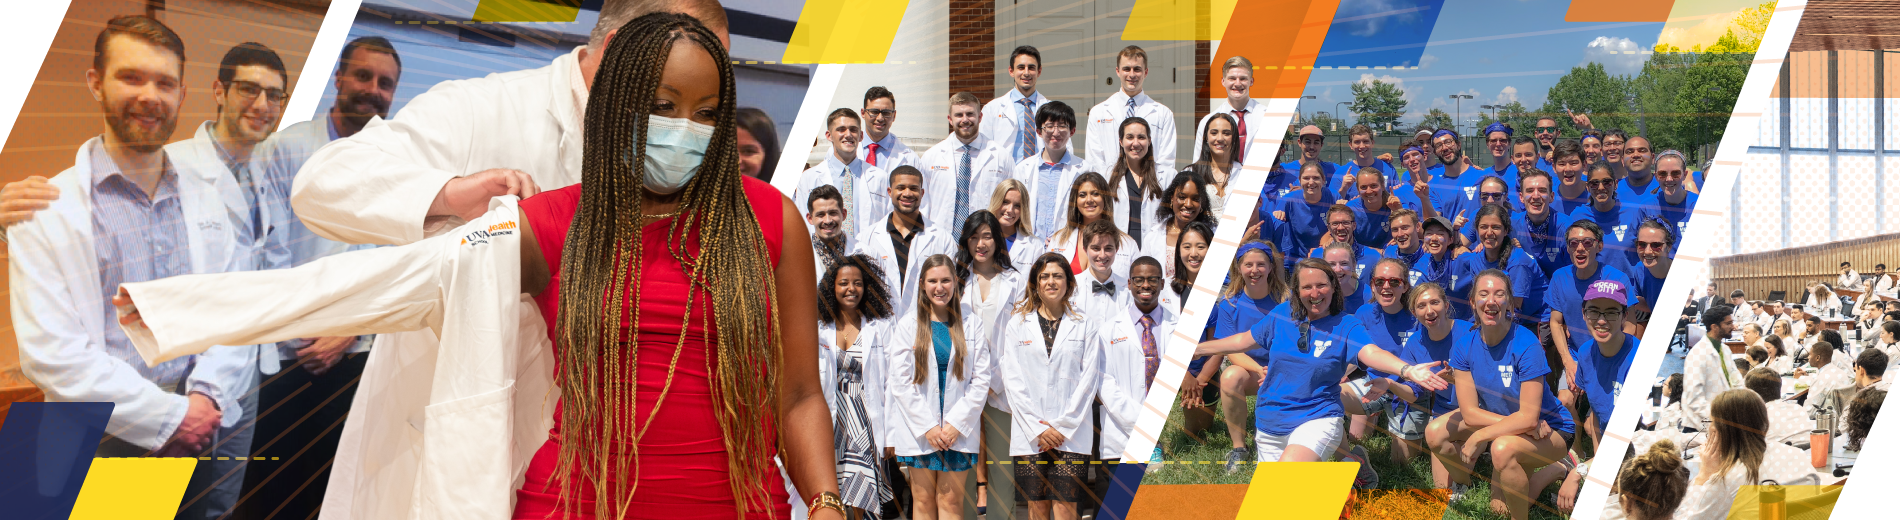 UVA School of Medicine Student Affairs graphic banner